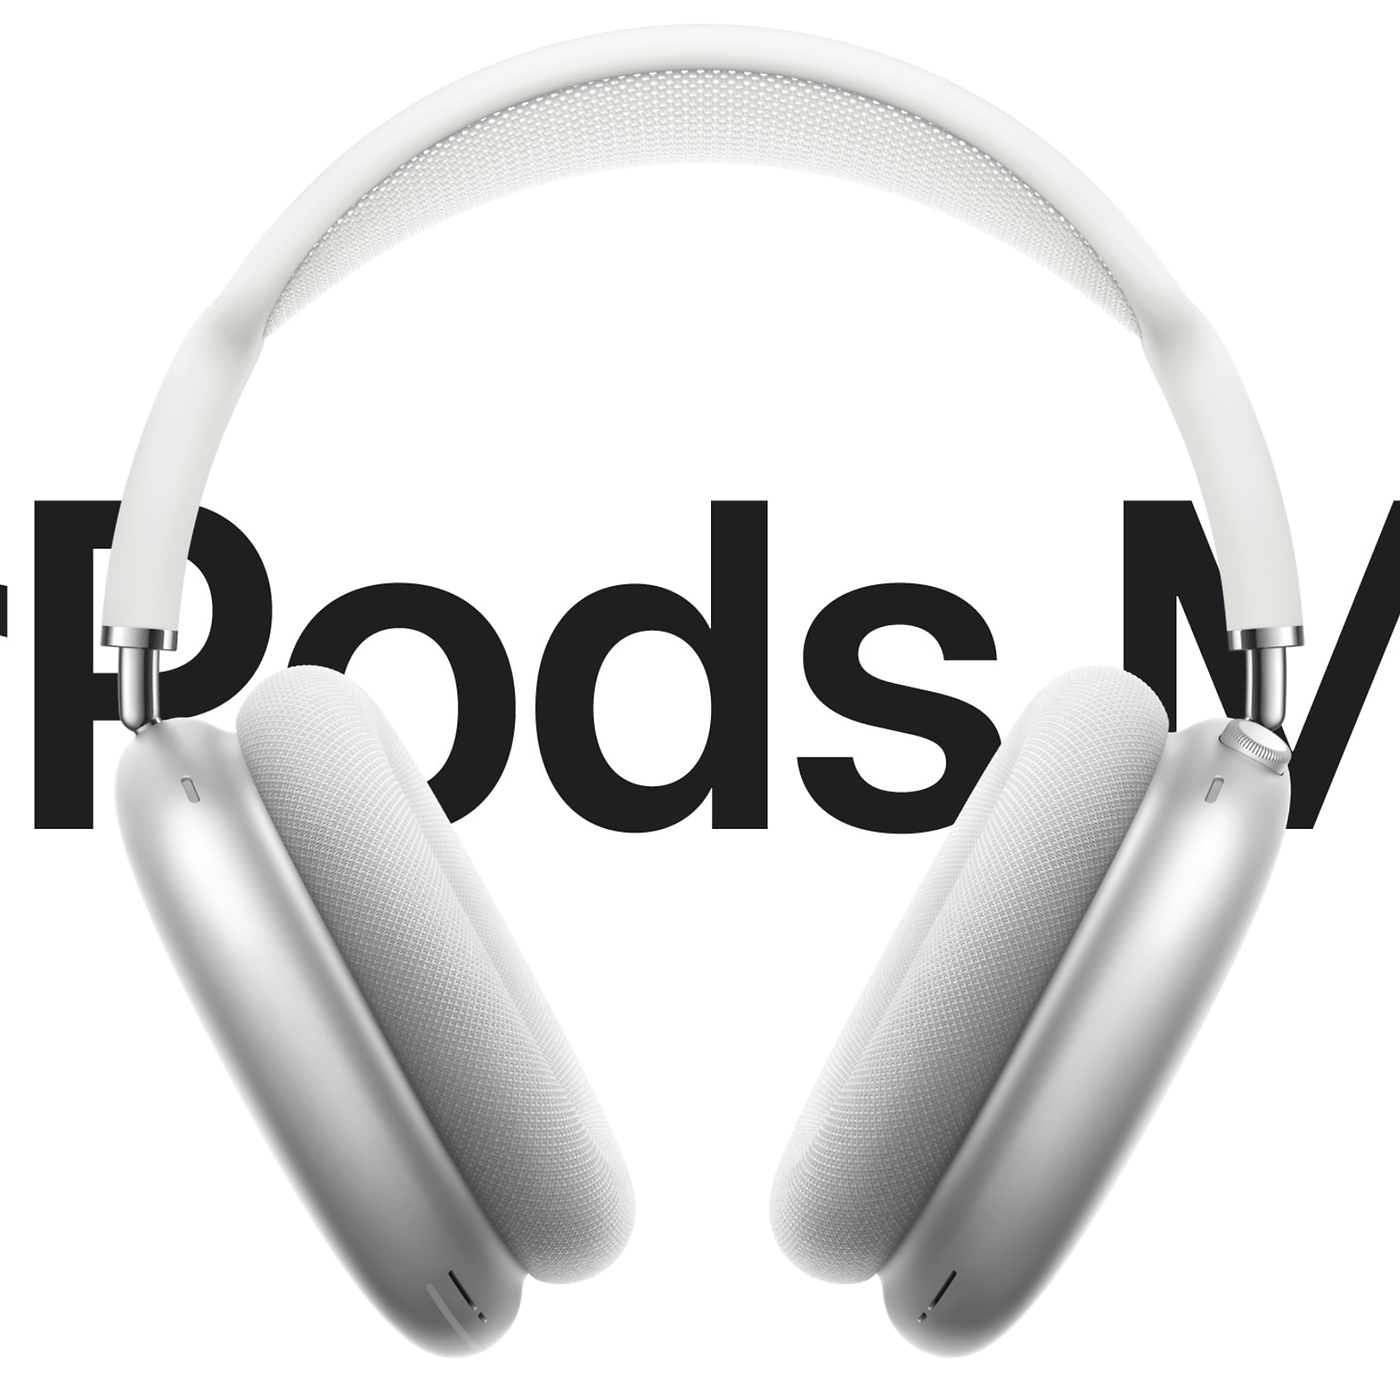 Casque Apple AirPods Max : Quelles sont ses fonctionnalités clés ?